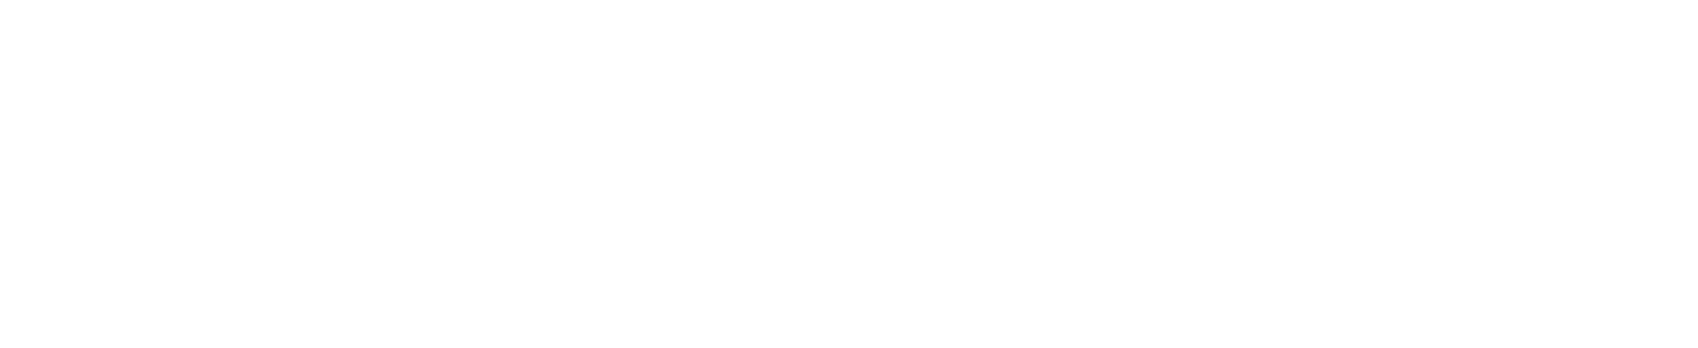 Breakthrough_v2